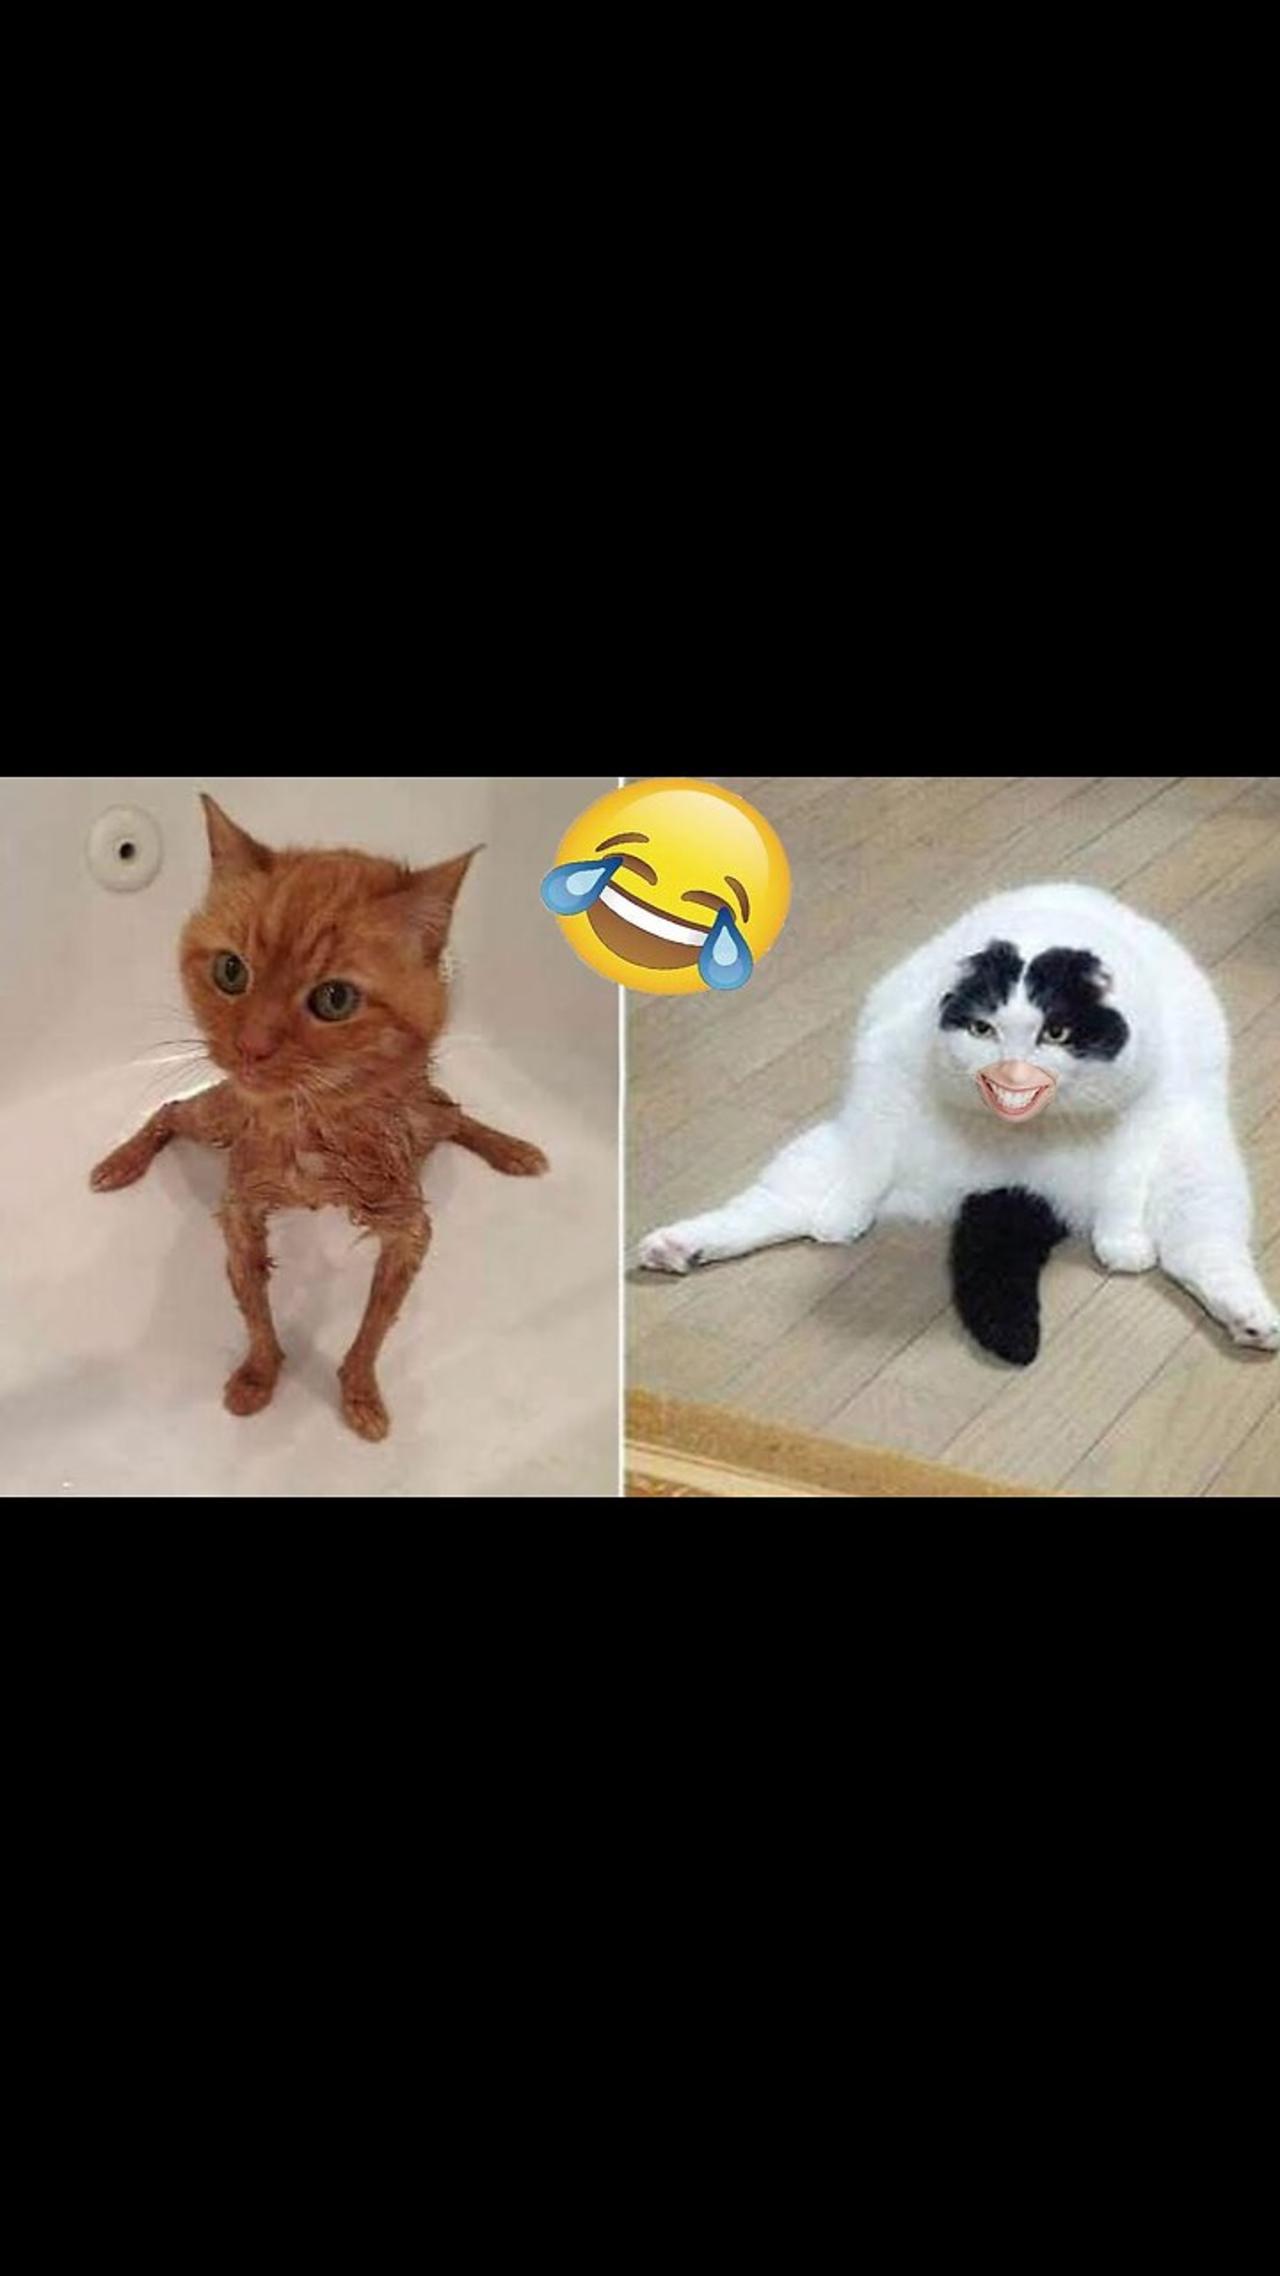 Cute Cats & Funny Cats 😍😍😅😅 #cats #shorts #viral #pets #mmvcats